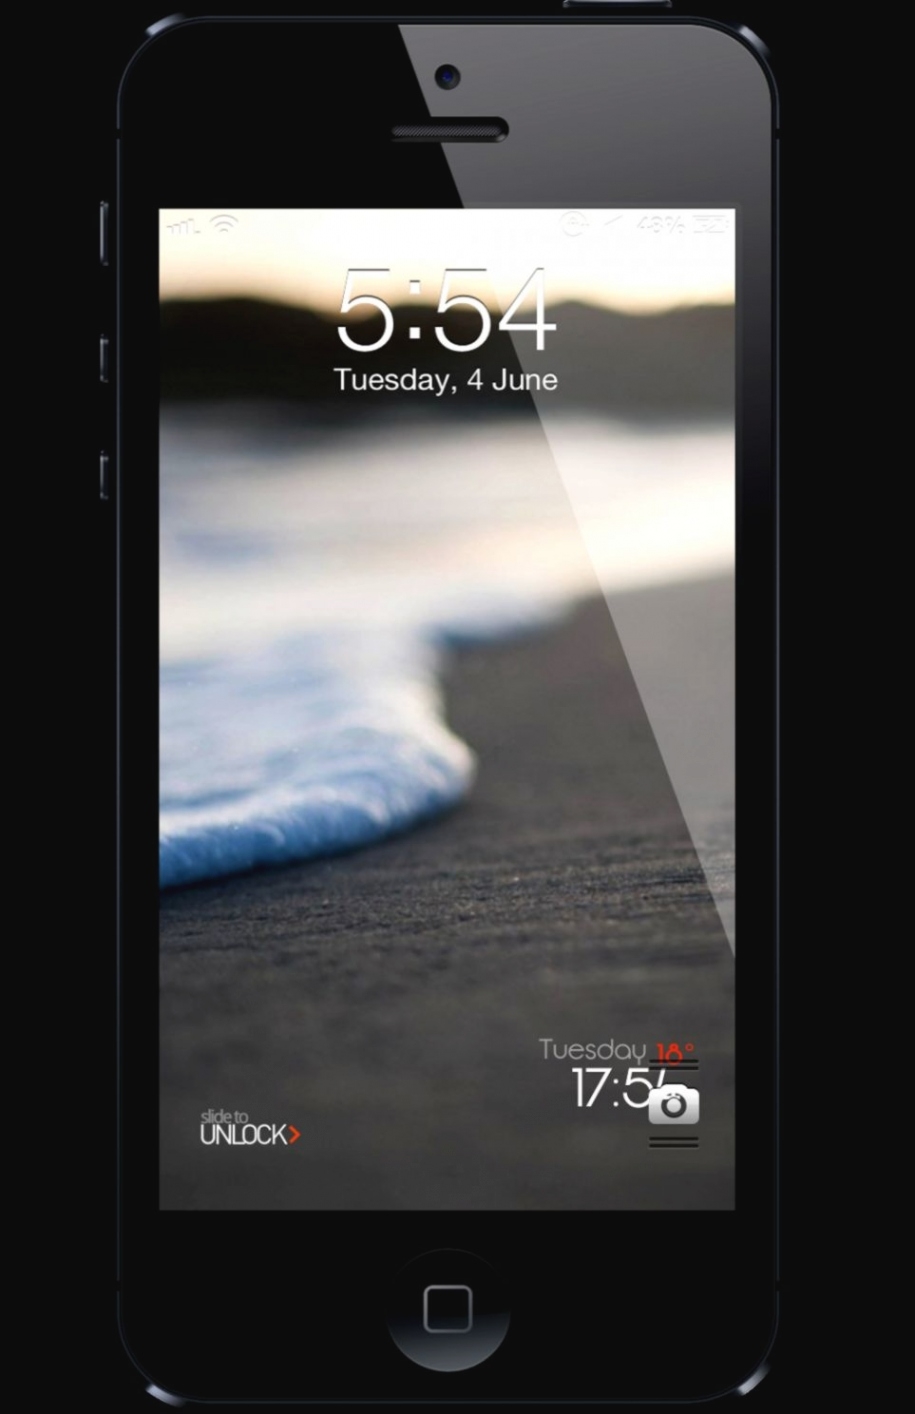 Best Iphone 4s Lock Screen Wallpaper - Smartphone - 915x1414 Wallpaper -  